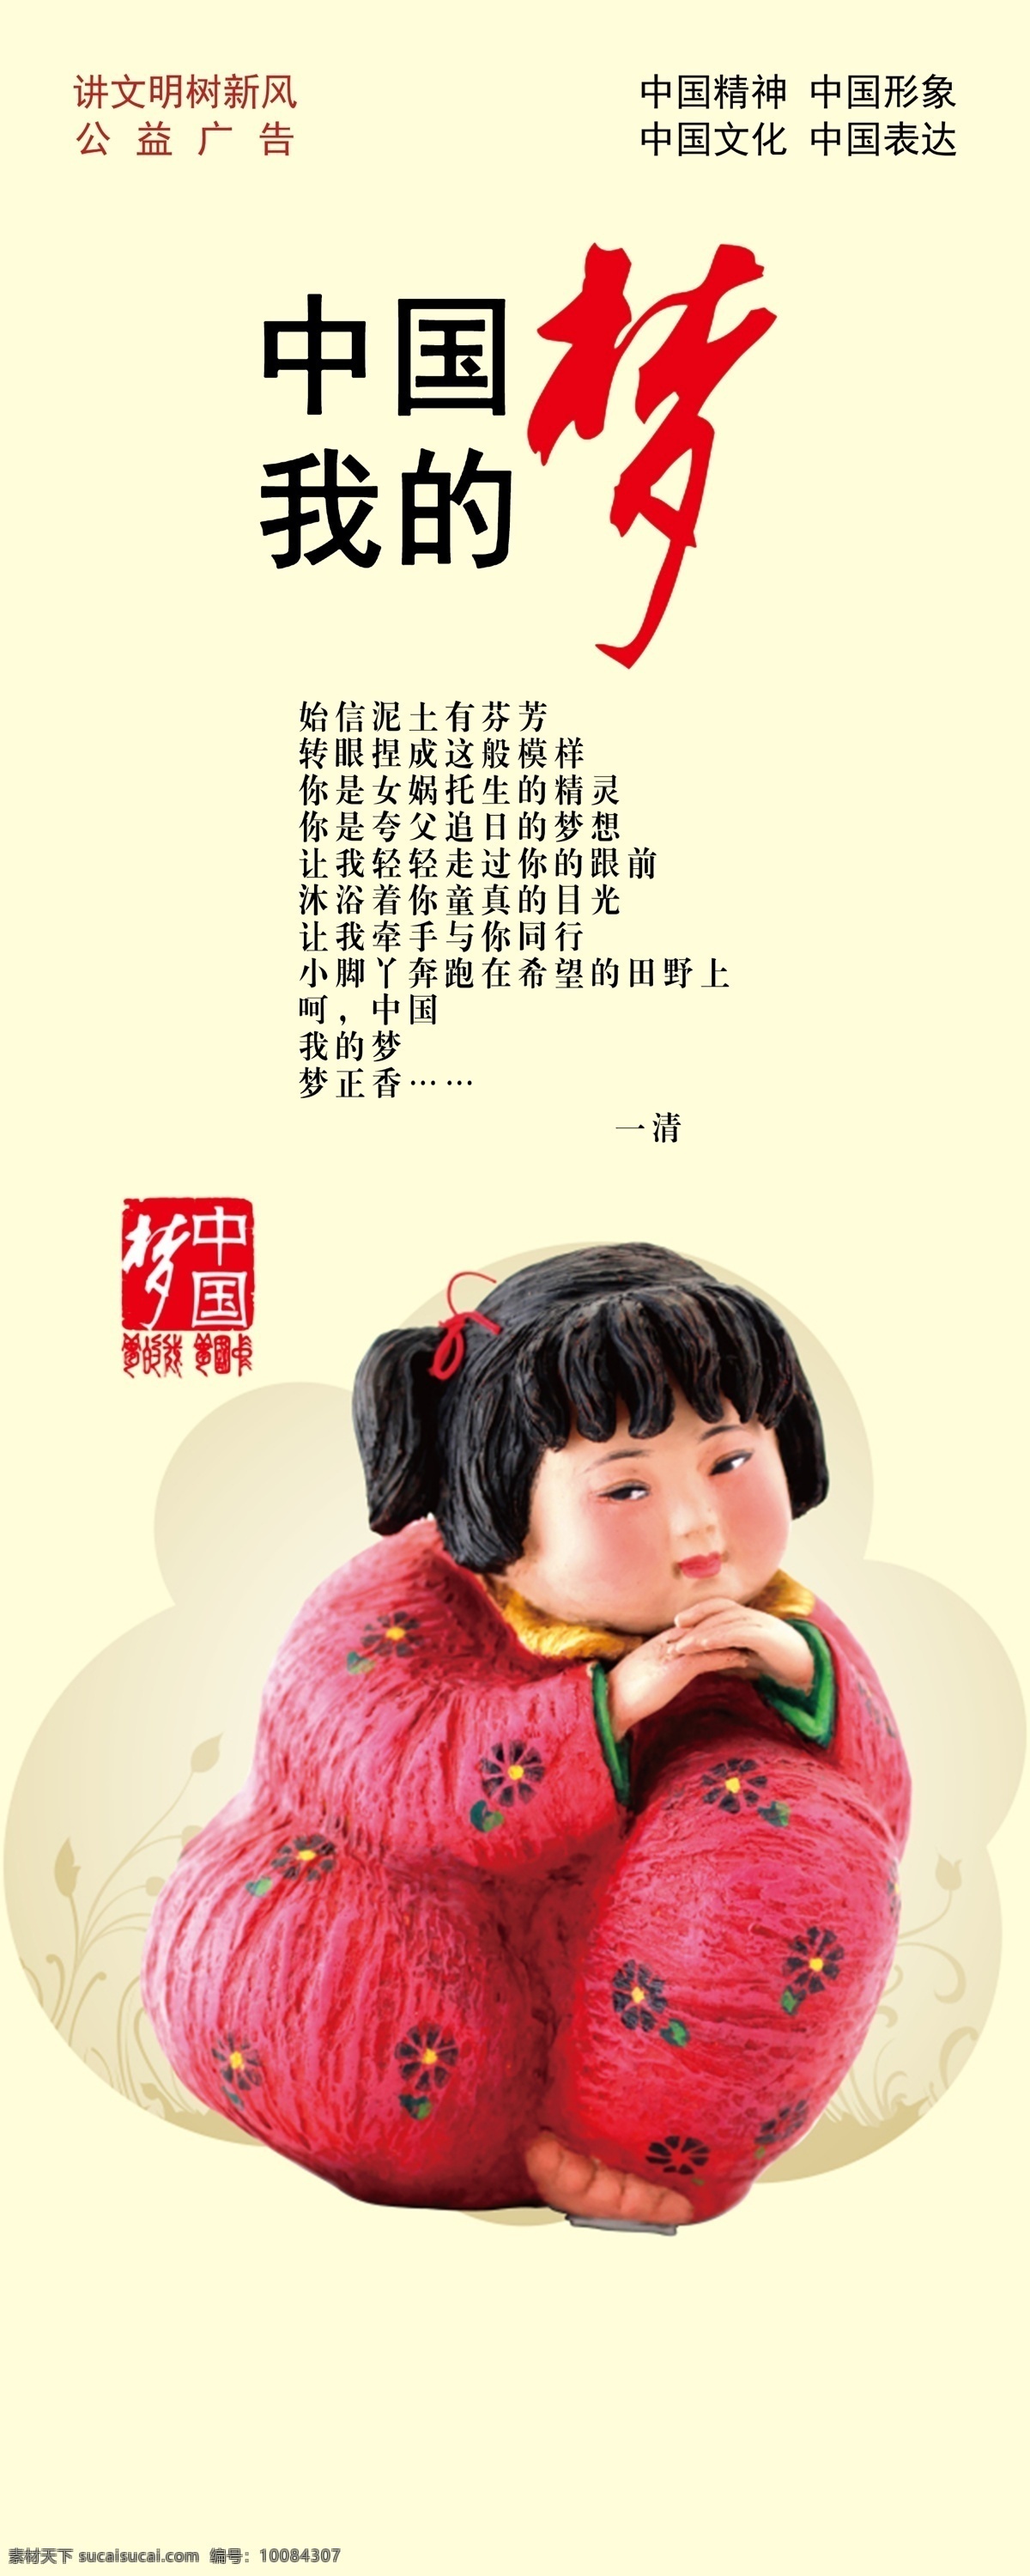 中国梦 公益广告 传统美德 中华美德 精神文明 形象表达 室外广告设计